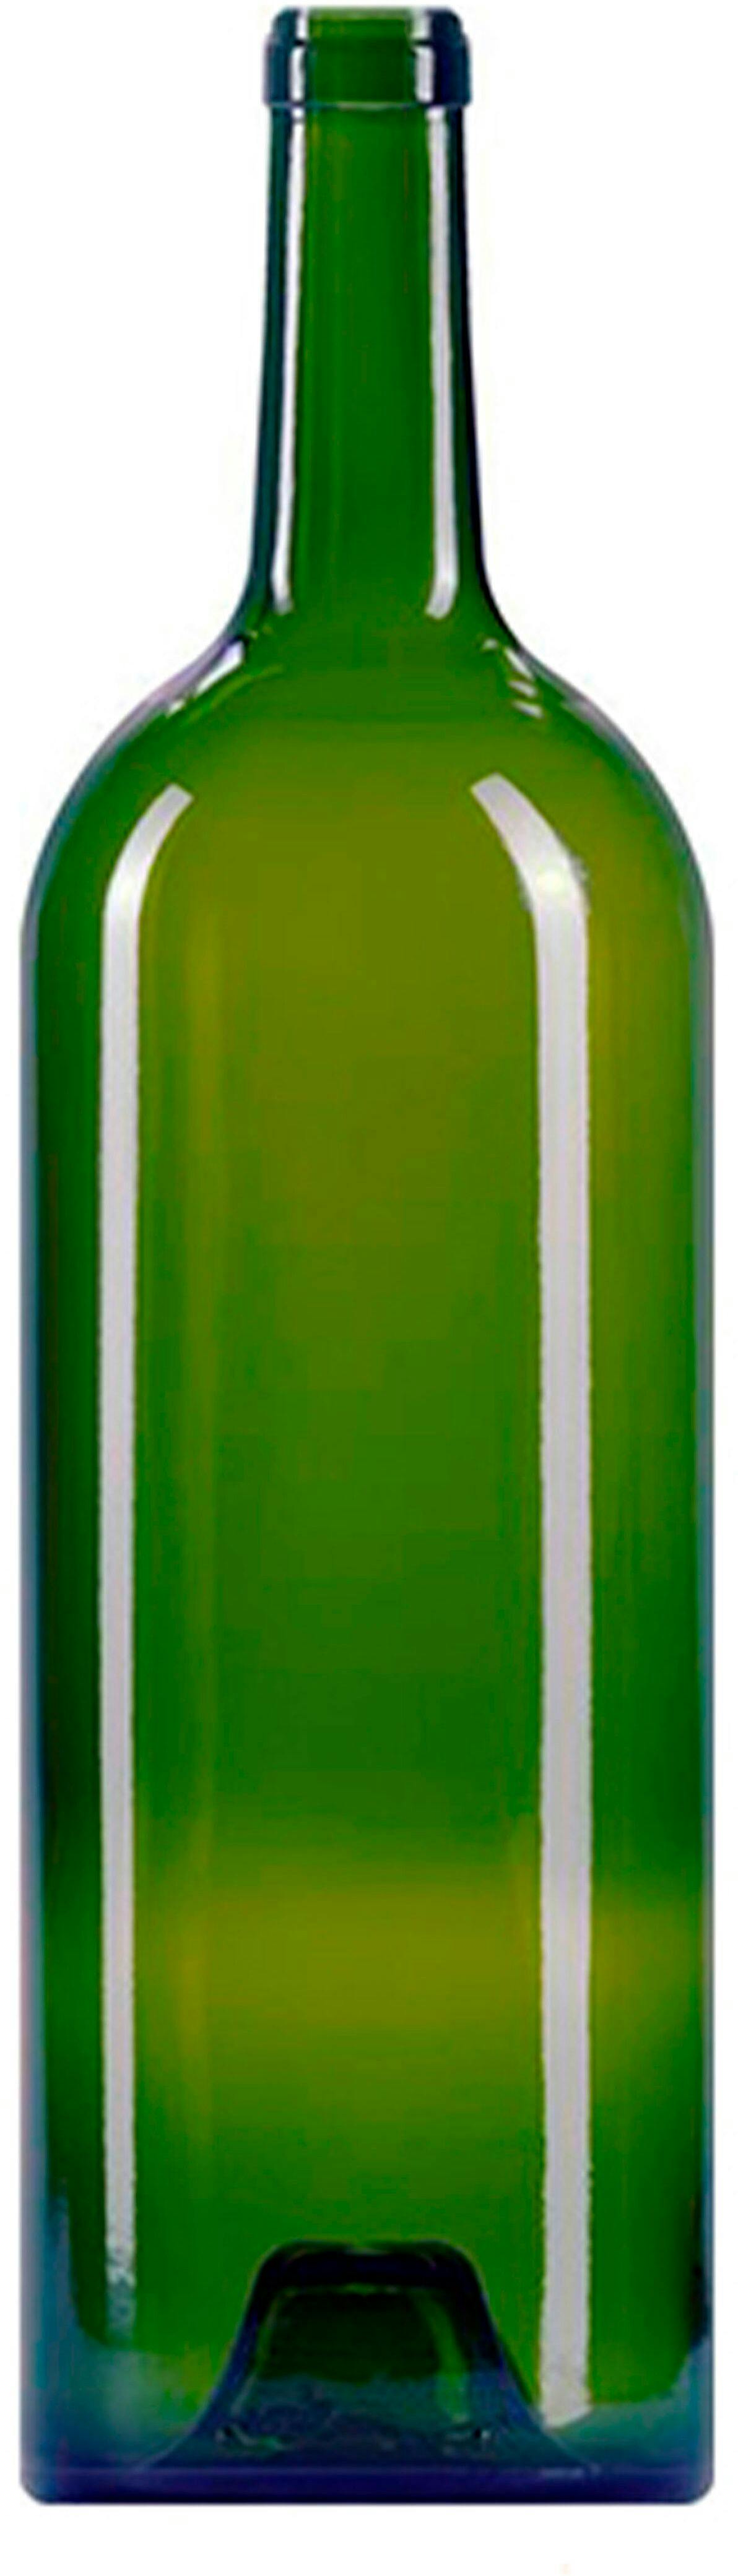 Garrafa Bordéus   GRAND VIN 1500 ml BG-Cortiça 